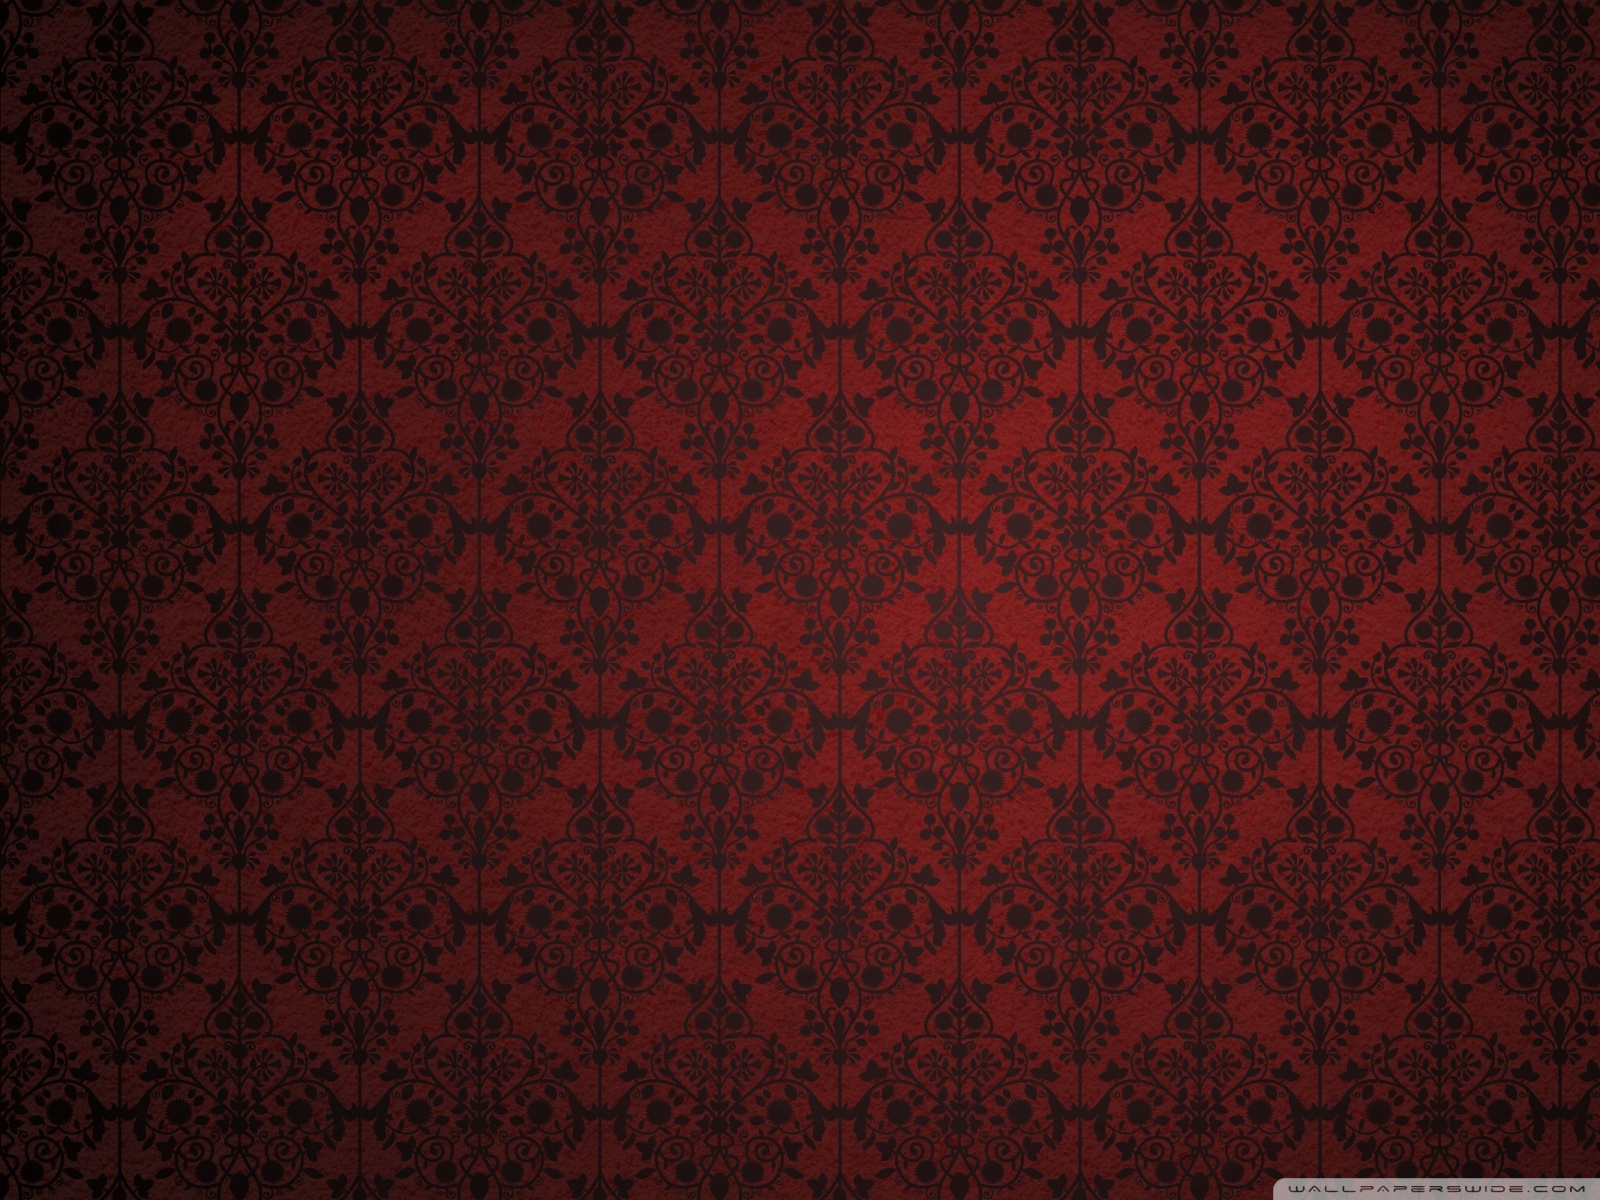 Red damask wallpaper